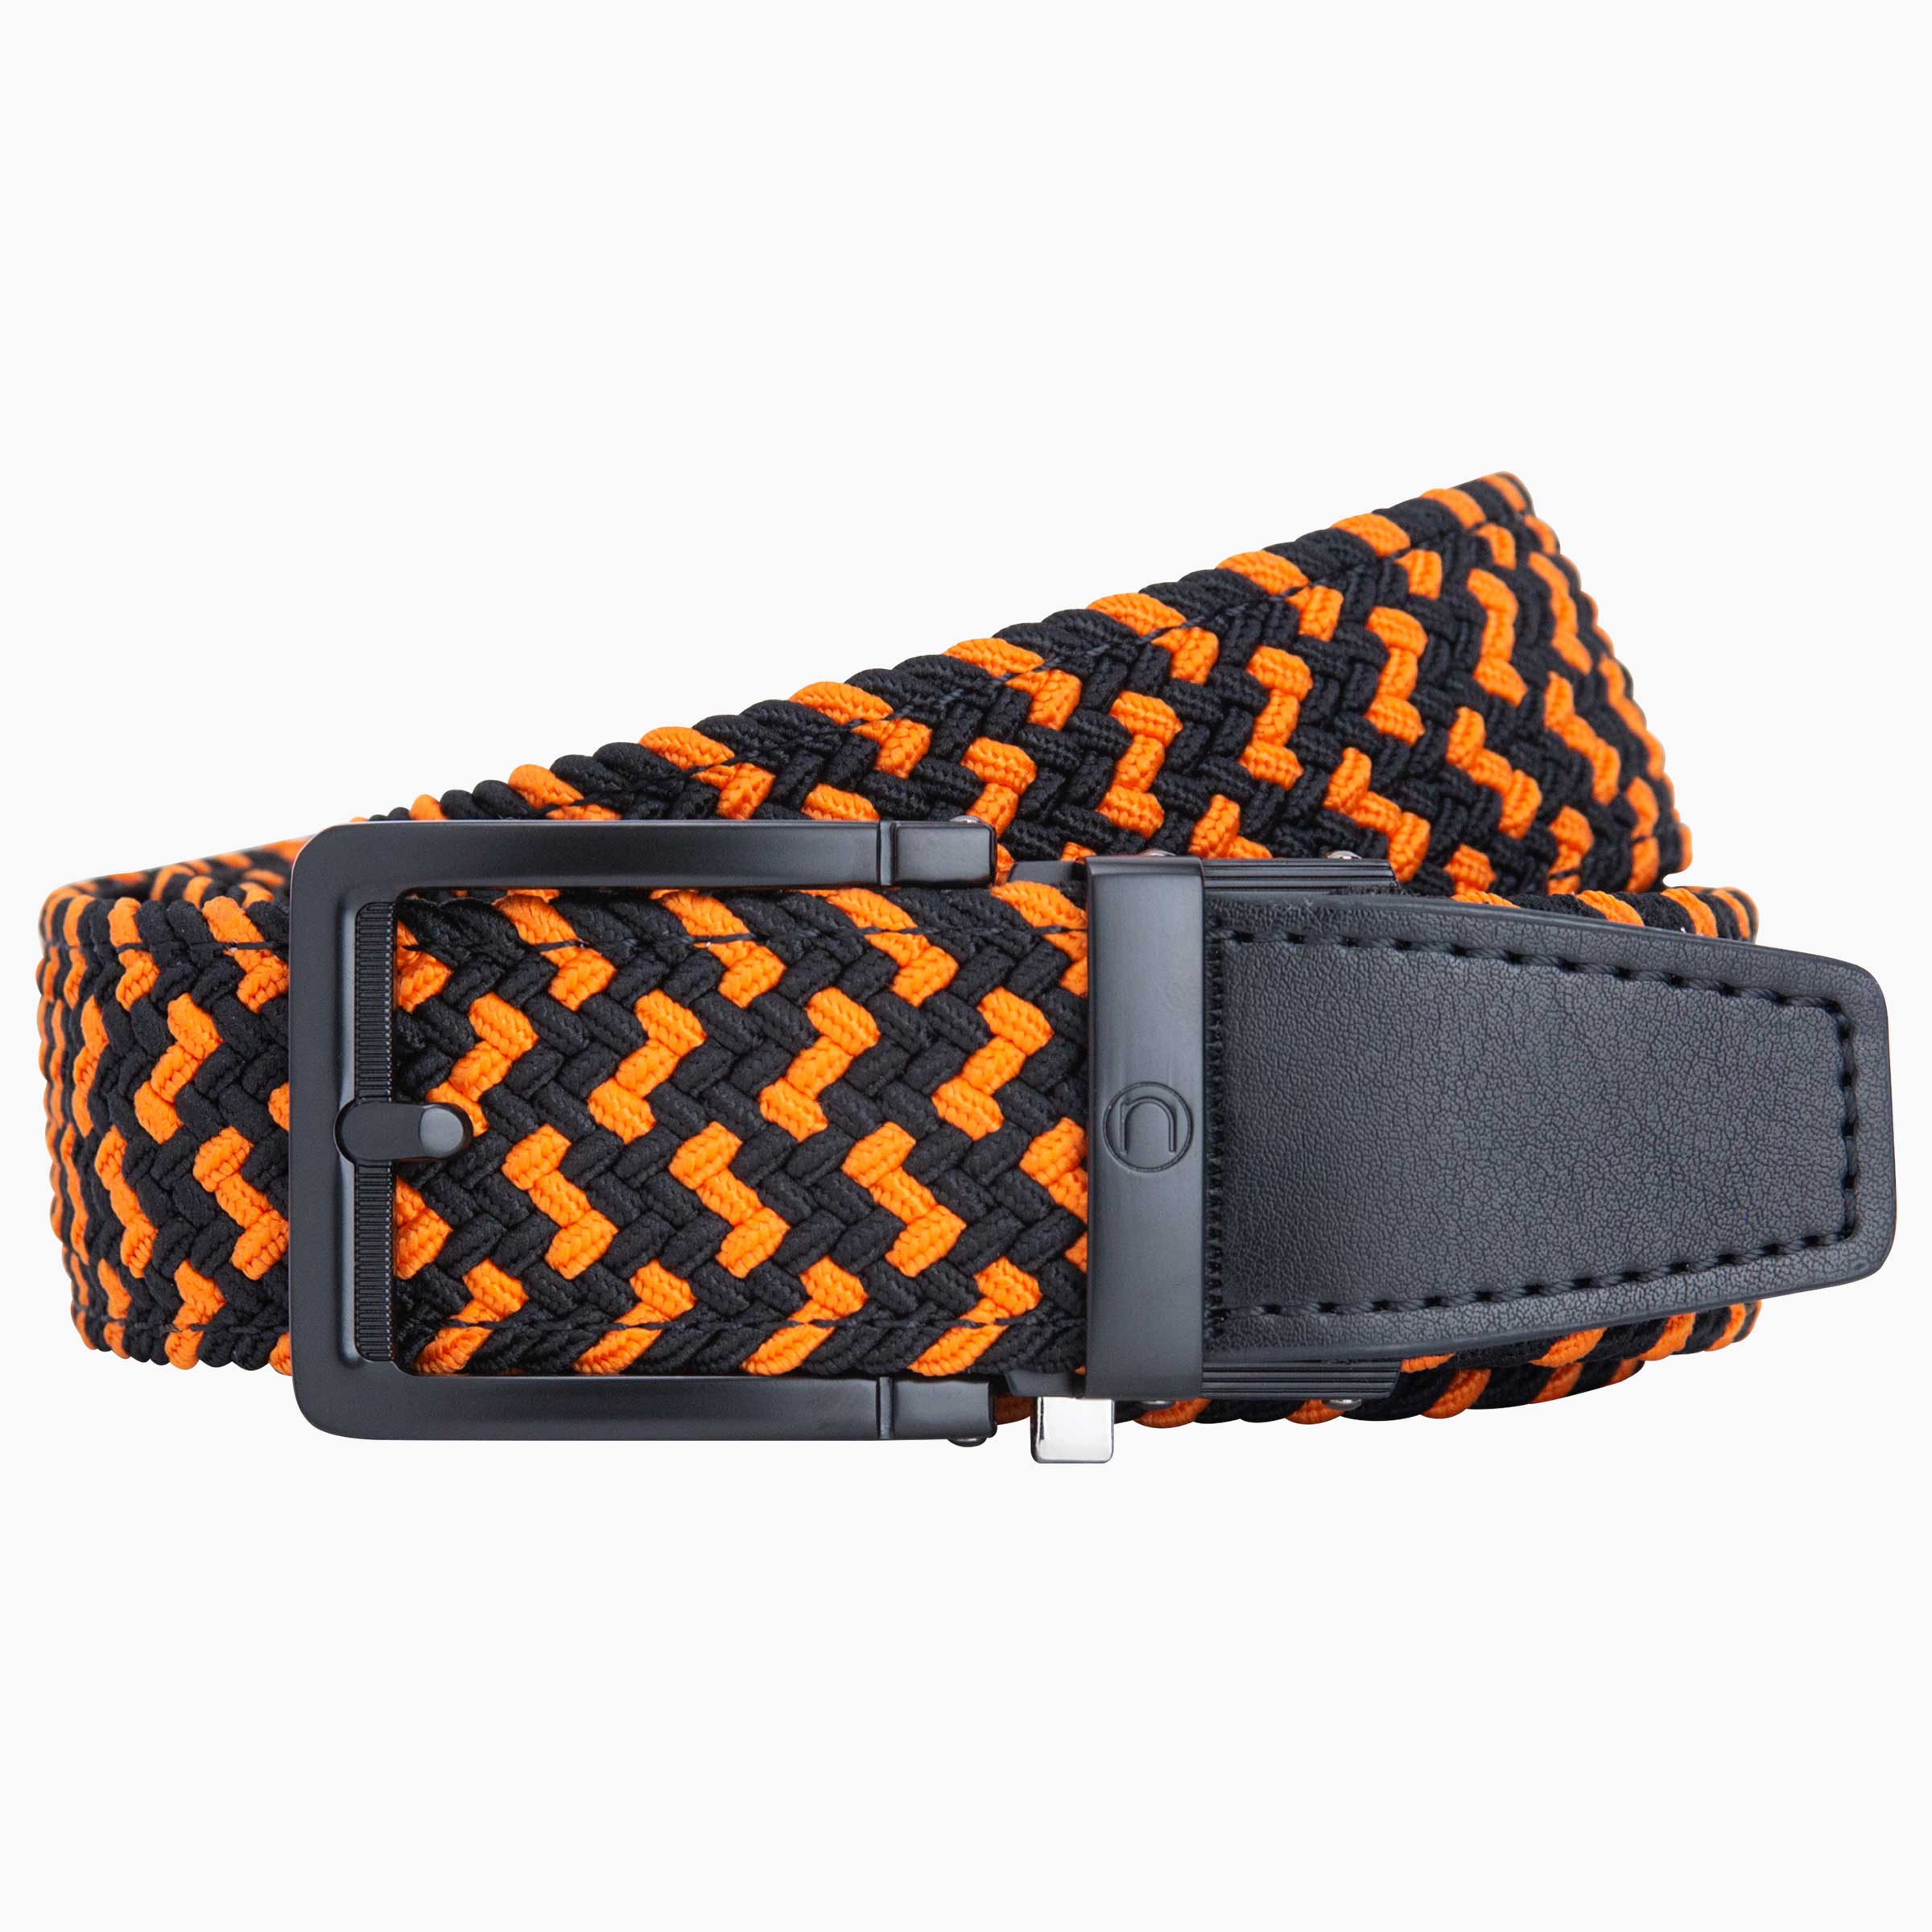 Braided Orange & Black Golf Belt 1.38" [35mm]